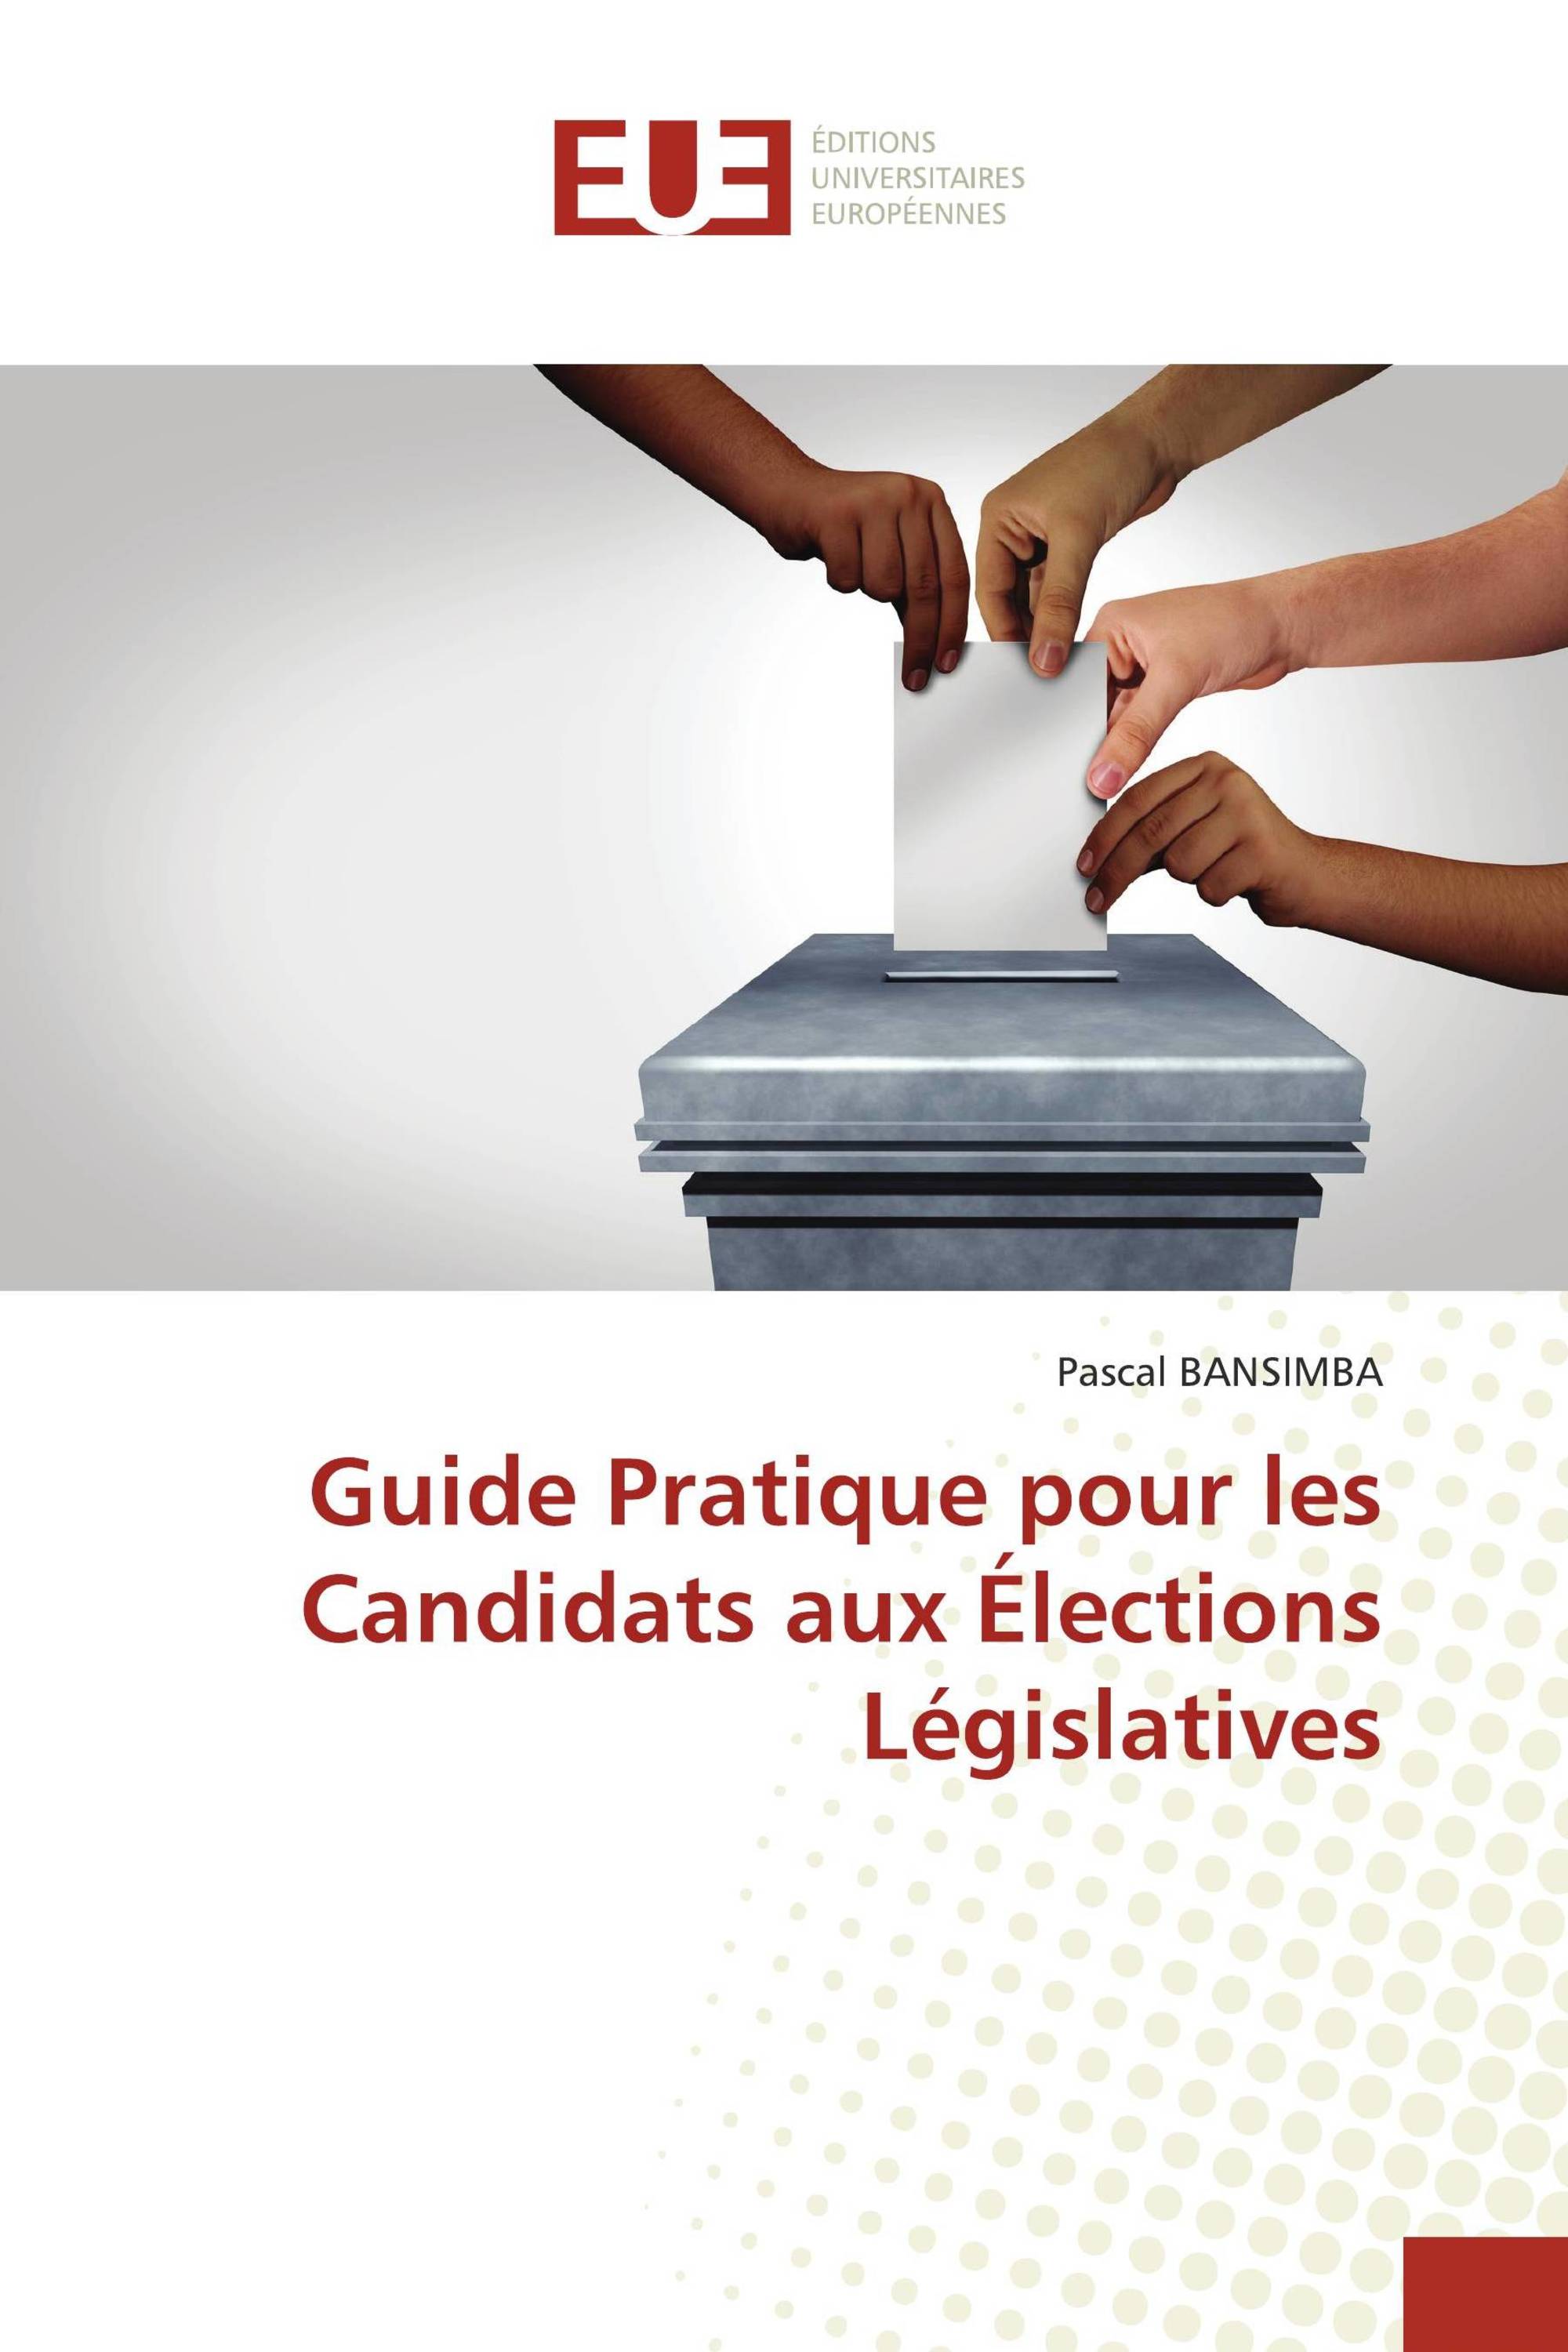 Guide Pratique pour les Candidats aux Élections Législatives